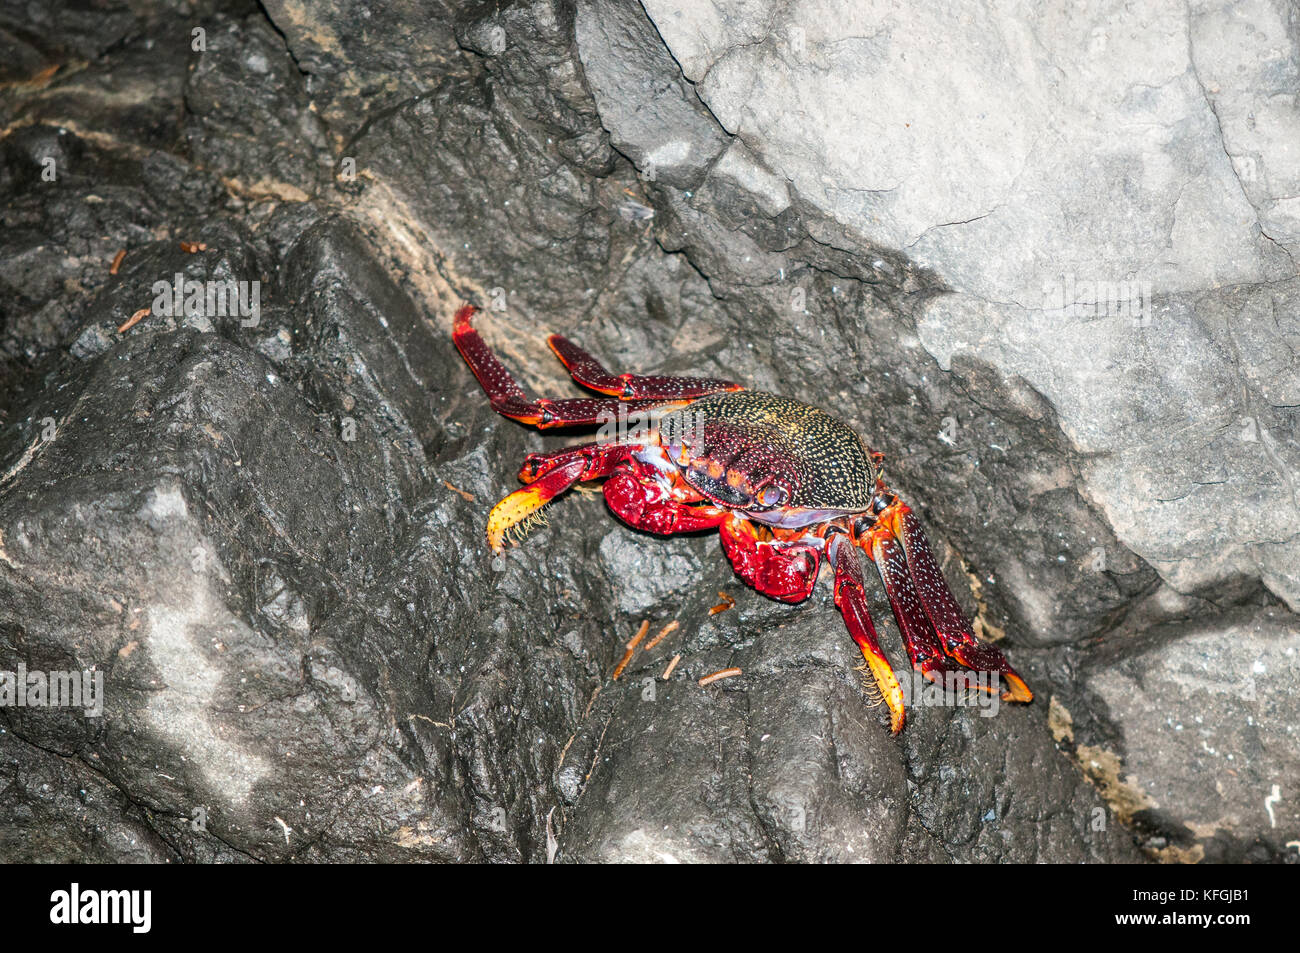 Crabe de l'Atlantique (Grapsus grapsus adscensionis) allongé sur un rocher à l'intérieur d'une grotte, Fuerteventura, Îles Canaries, Espagne Banque D'Images